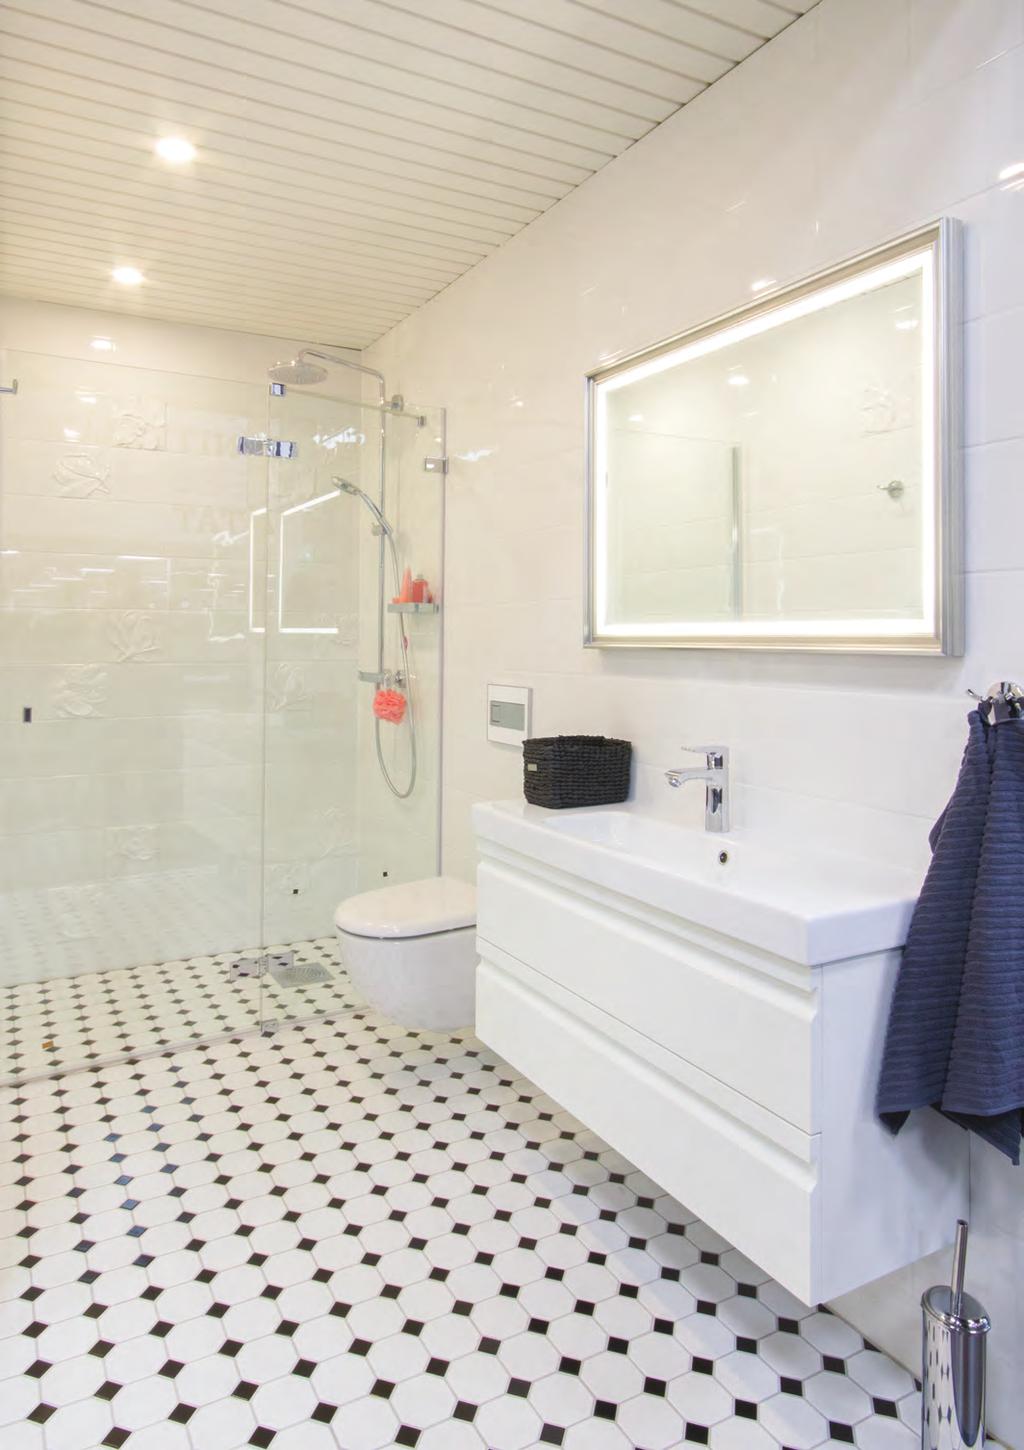 Oprawy Velox są idealne do łazienek i innych pomieszczeń